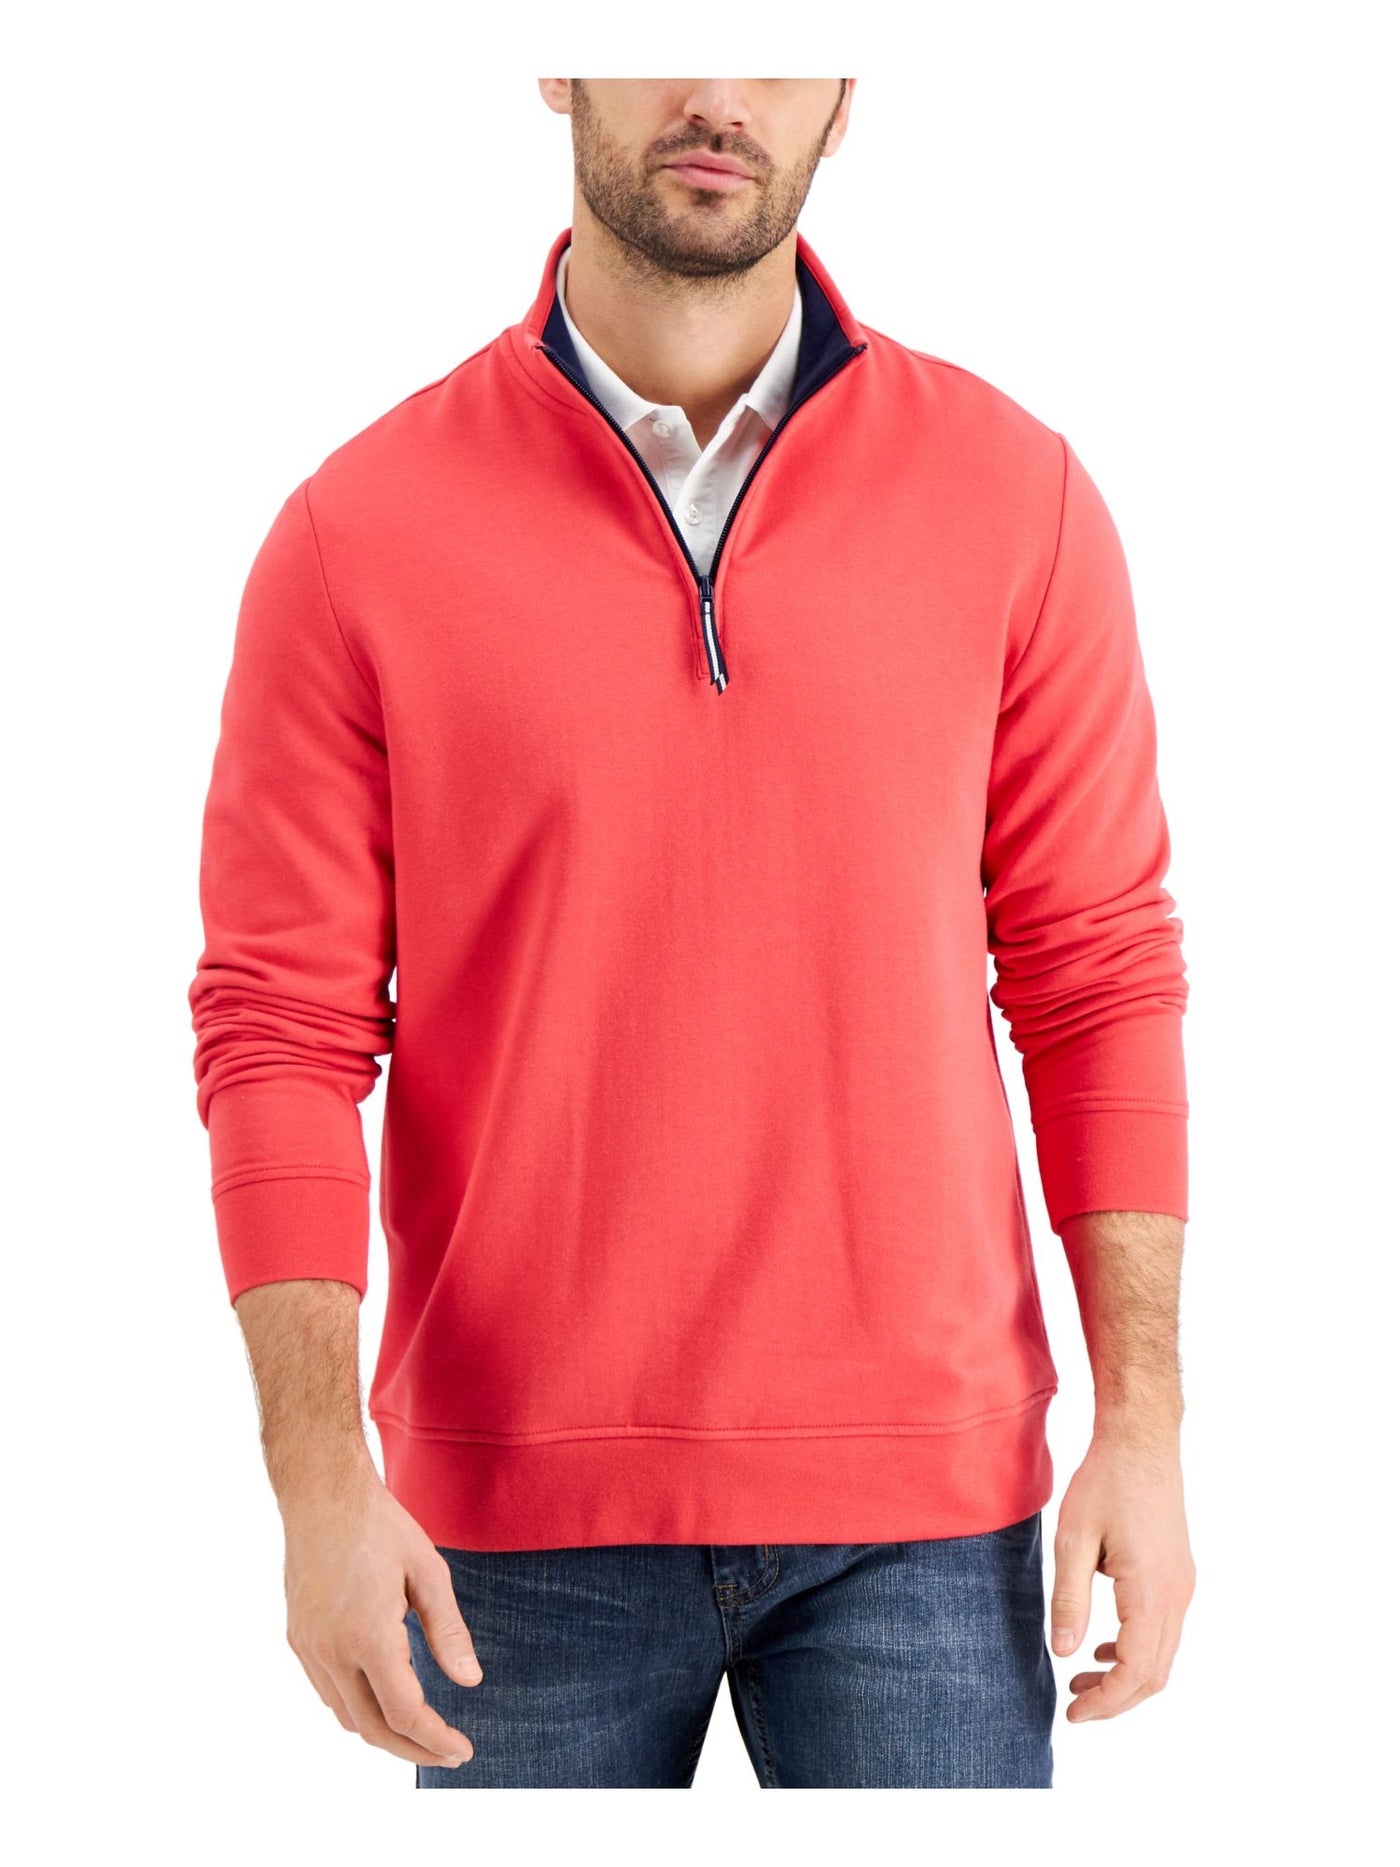 CLUBROOM Mens Red Mock Neck Classic Fit Quarter-Zip Fleece Sweatshirt M